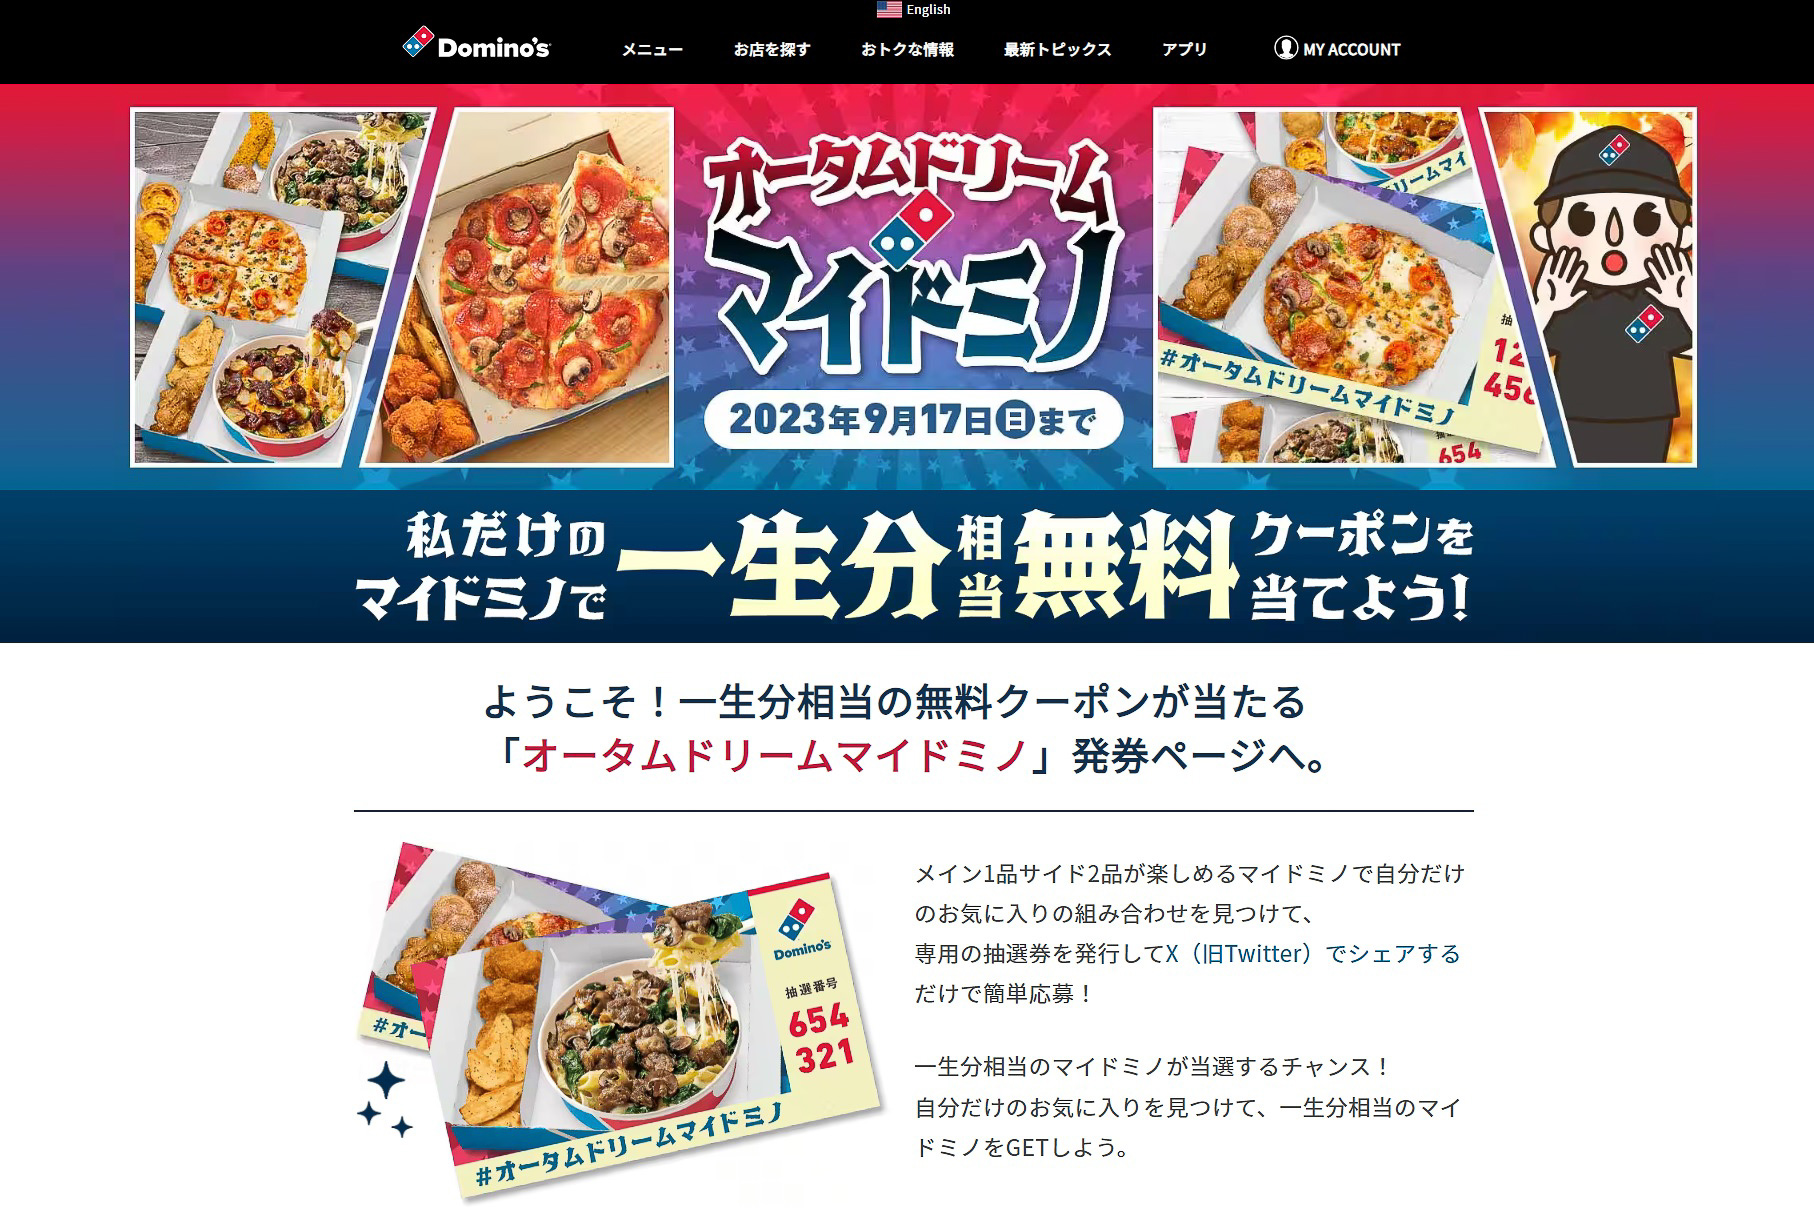 ドミノ・ピザ、マイドミノ無料クーポン“一生分（最大約500万円）相当